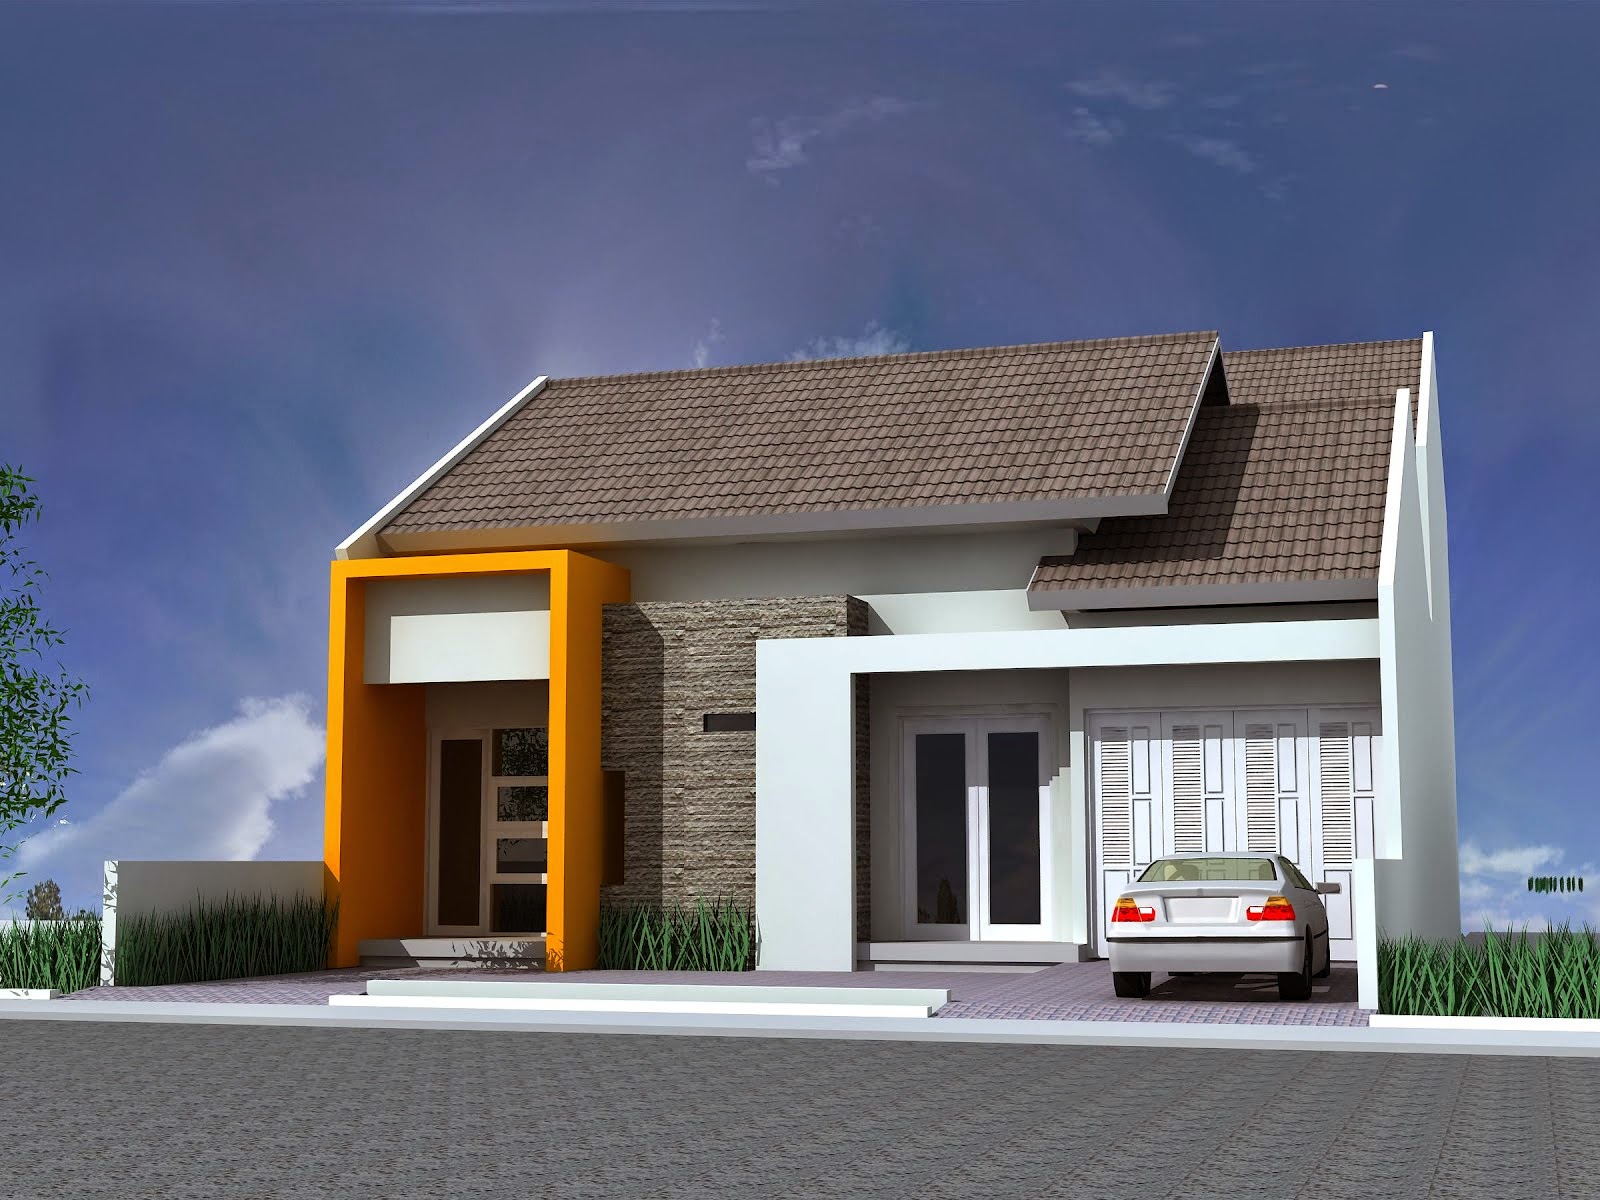  Gambar  Rumah  Minimalis  Satu  Lantai  Terbaru 2019 Desain 